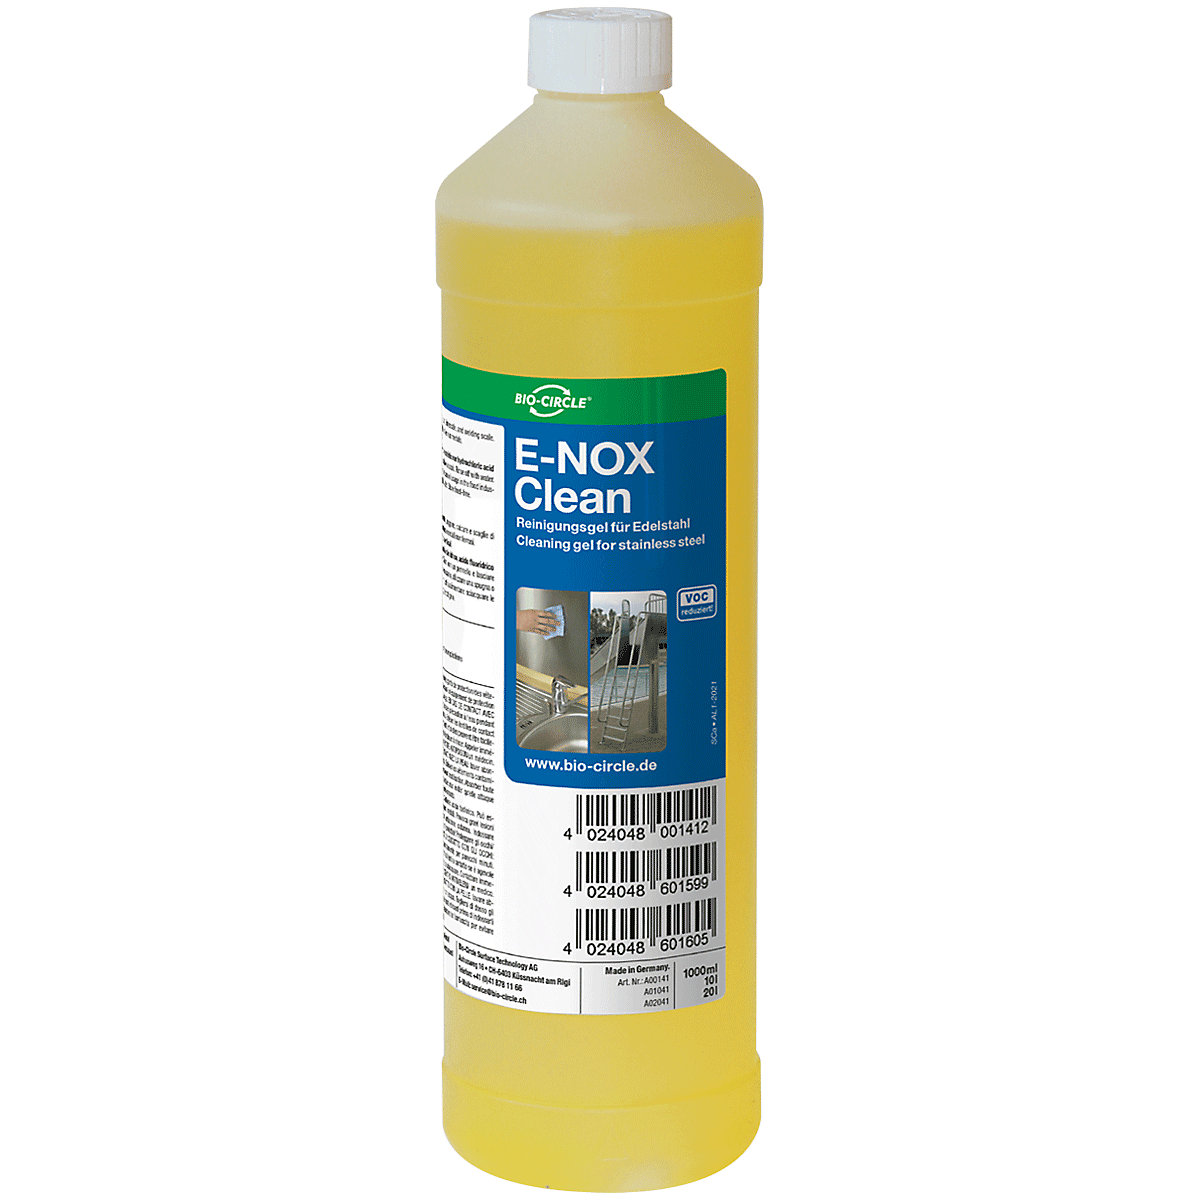 Detergente per la rimozione di calcare e ruggine E-NOX Clean - Bio-Circle